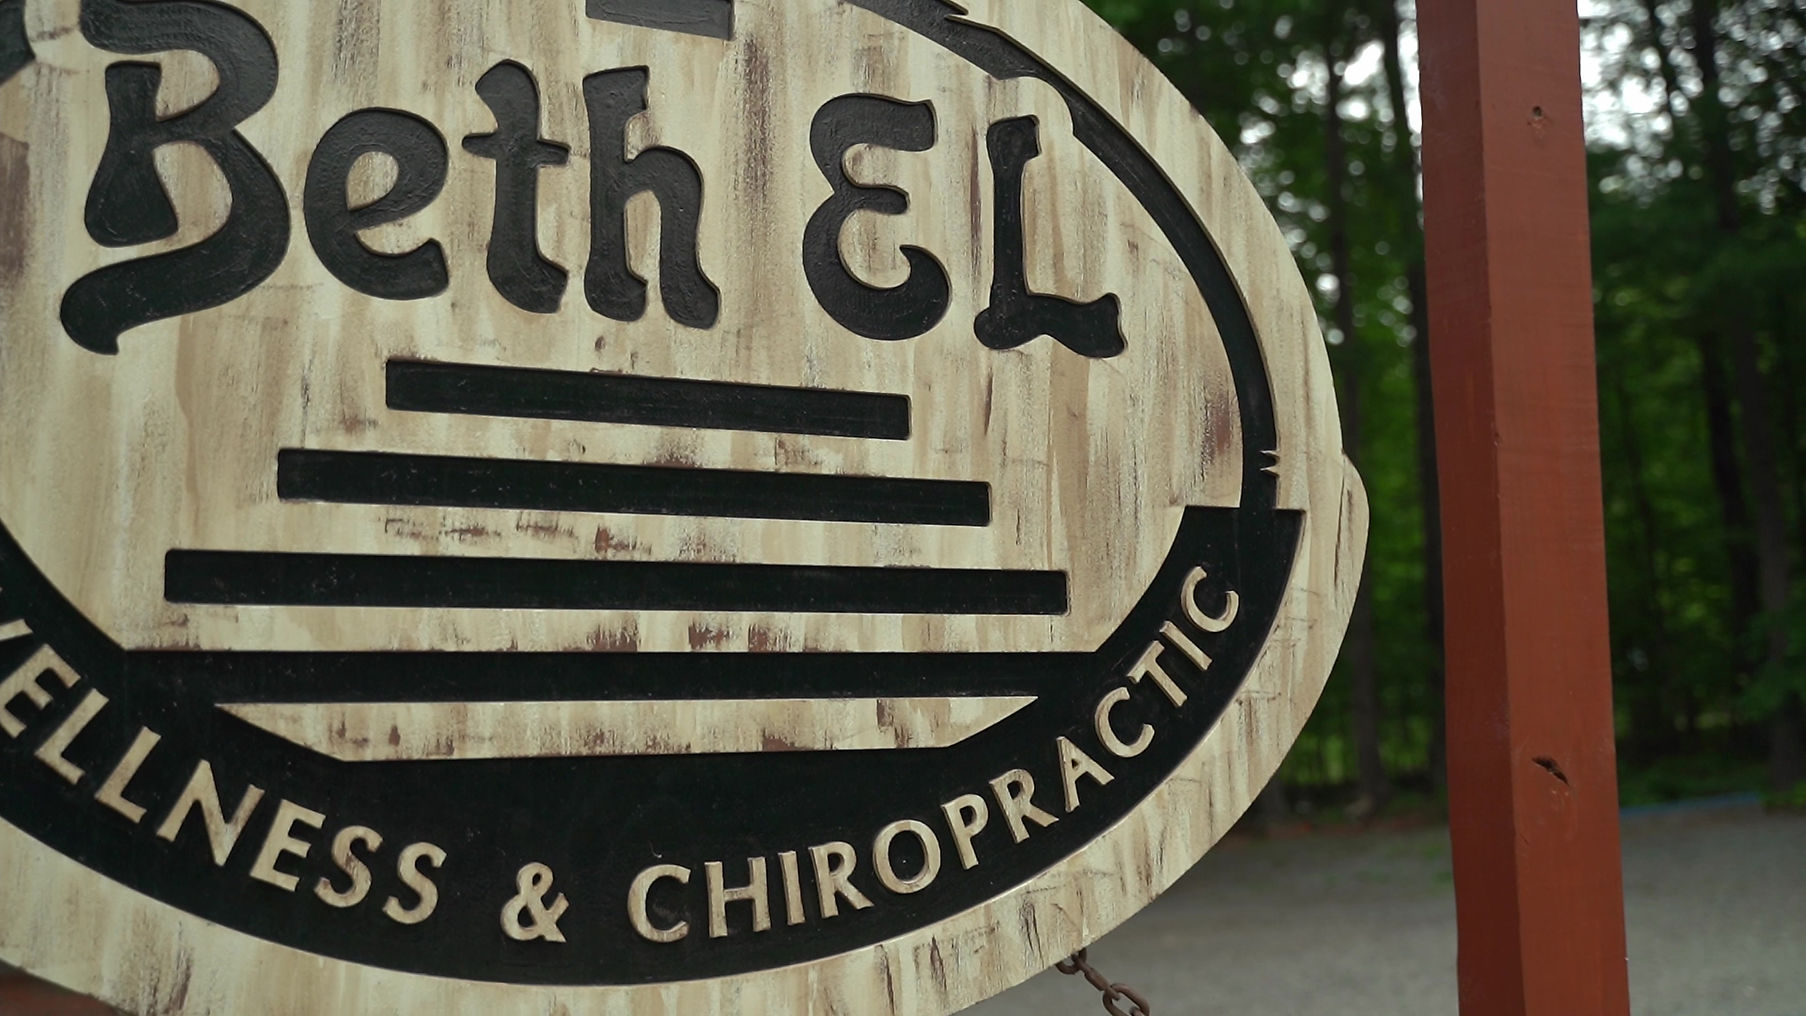 Welcome to Beth El Wellness & Chiropractic